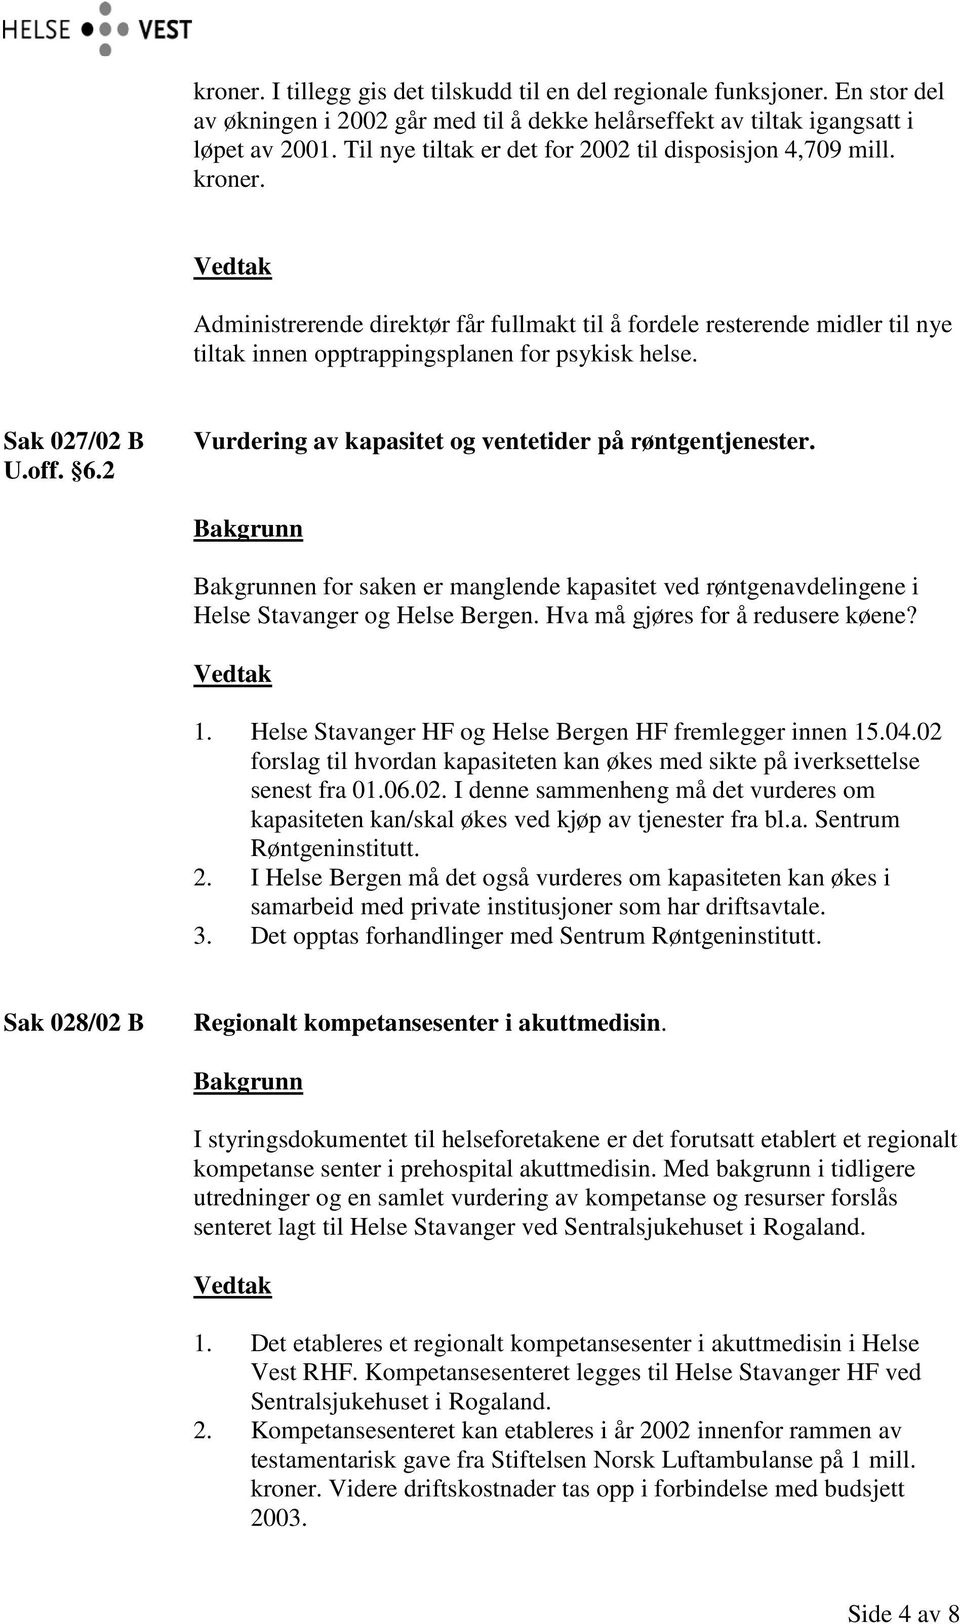 Sak 027/02 B U.off. 6.2 Vurdering av kapasitet og ventetider på røntgentjenester. en for saken er manglende kapasitet ved røntgenavdelingene i Helse Stavanger og Helse Bergen.